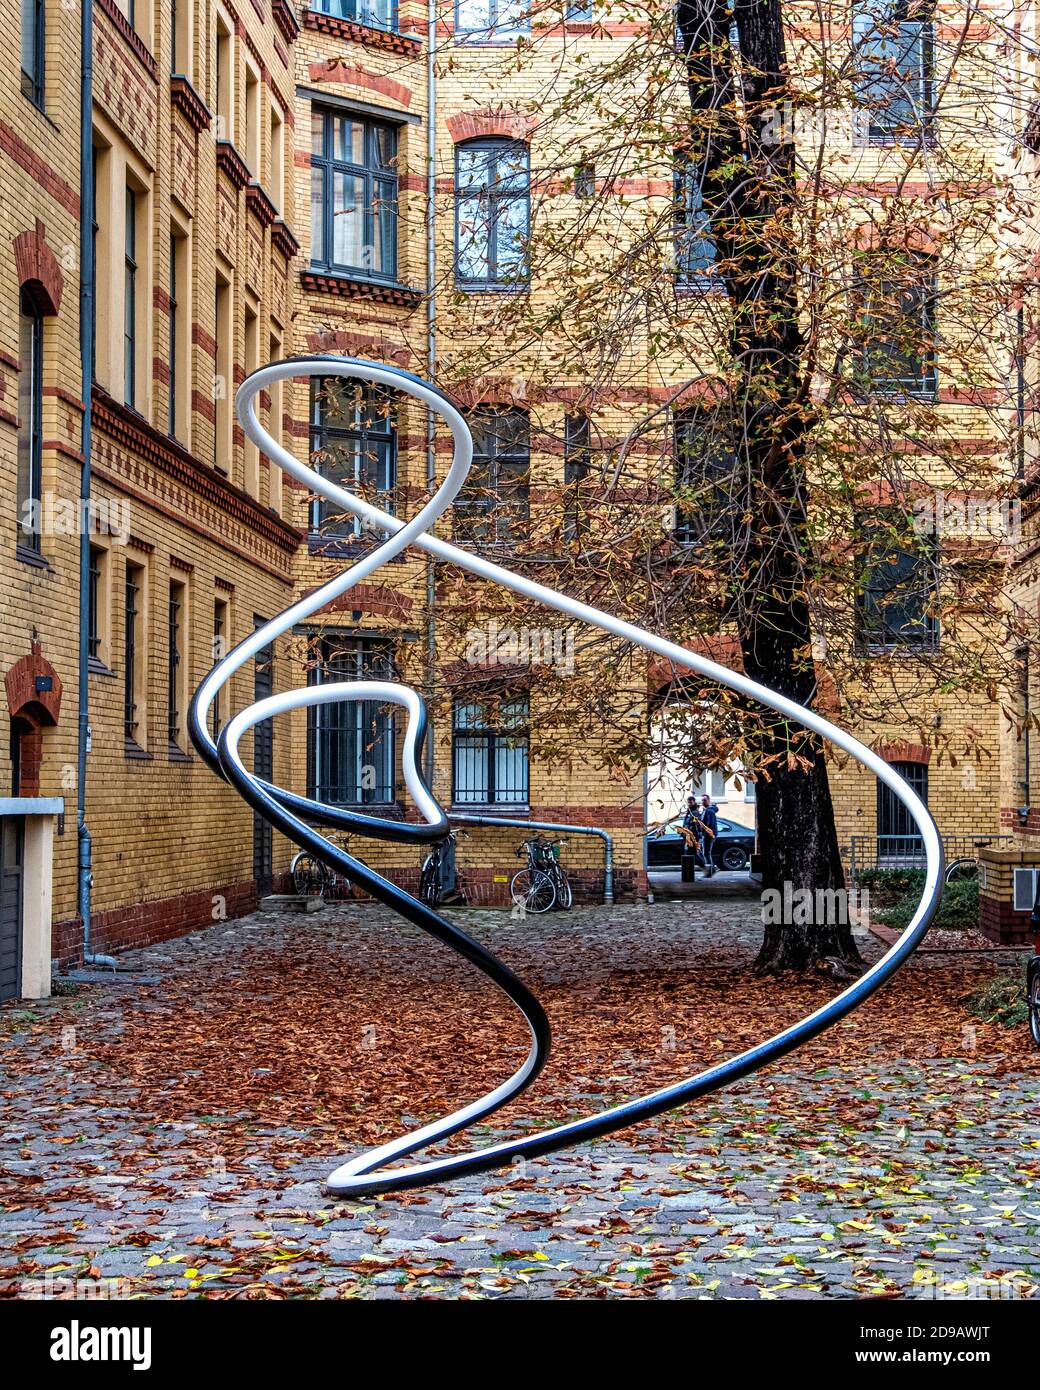 Modern steel sculpture in inner courtyard of refurbished historic brick Royal Loan Office building in Linienstraße, Mitte, Berlin Stock Photo